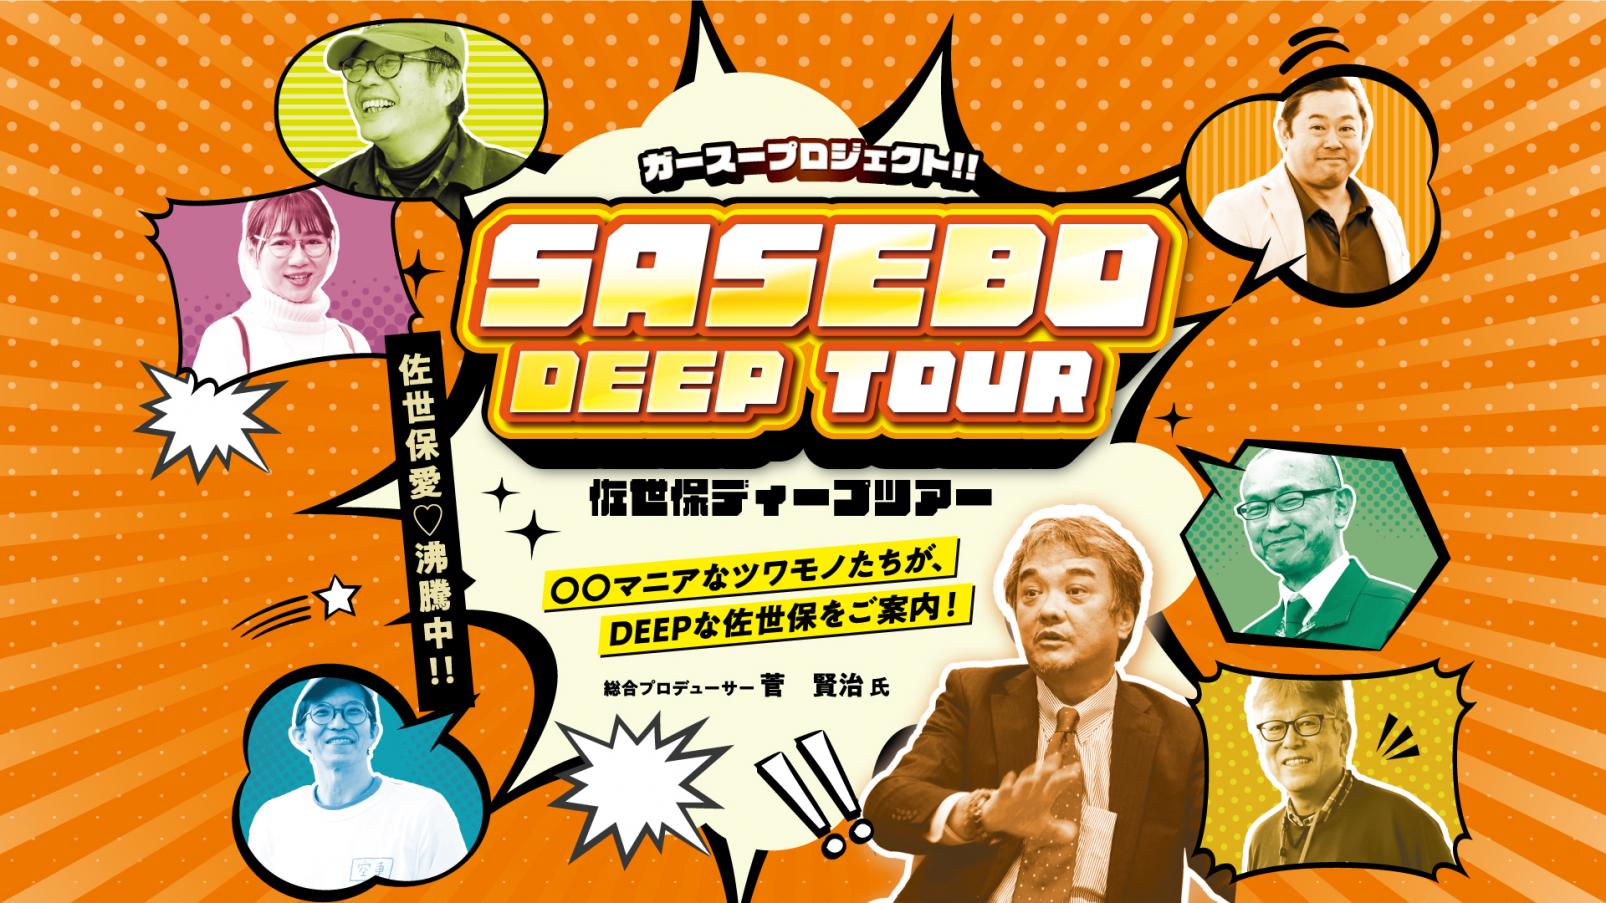 SASEBO DEEP TOUR各種-1